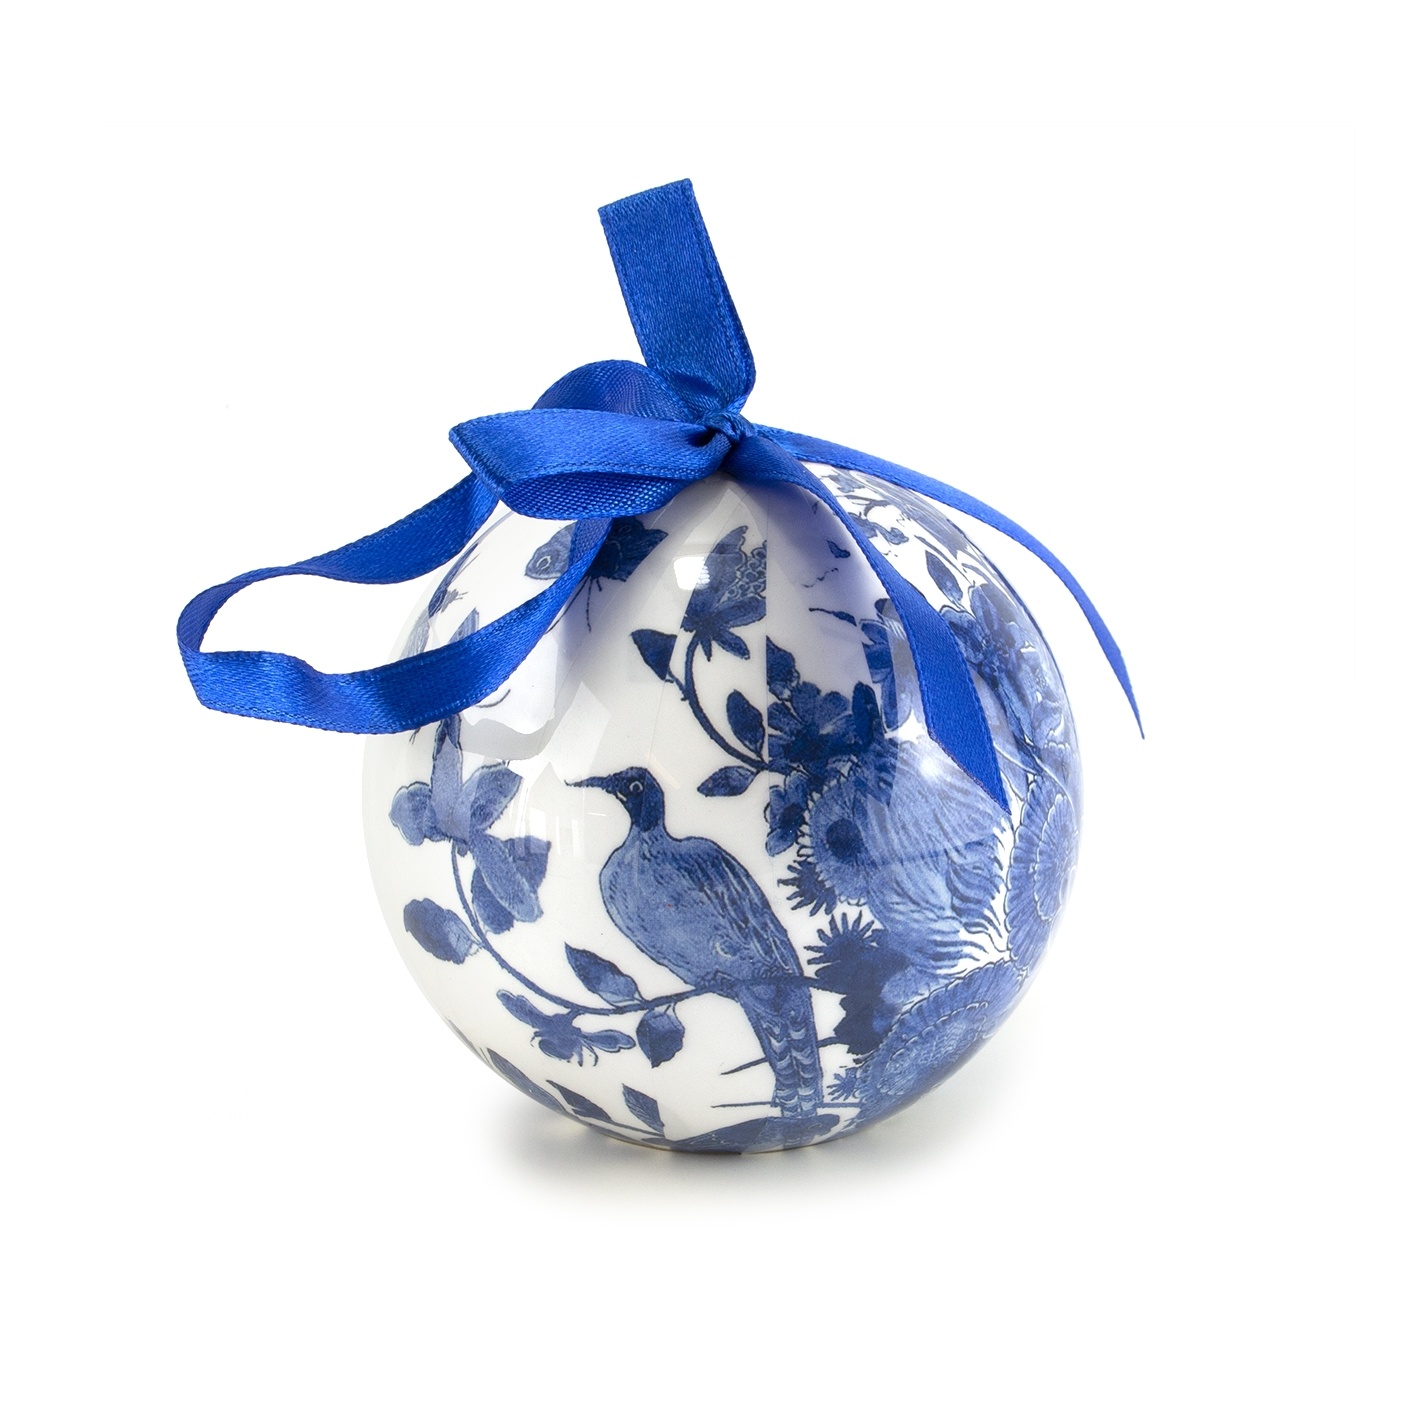 Savant Fascinerend annuleren Kerstbal Delfts blauw, onbreekbaar | Museum Webshop - Museum-Webshop